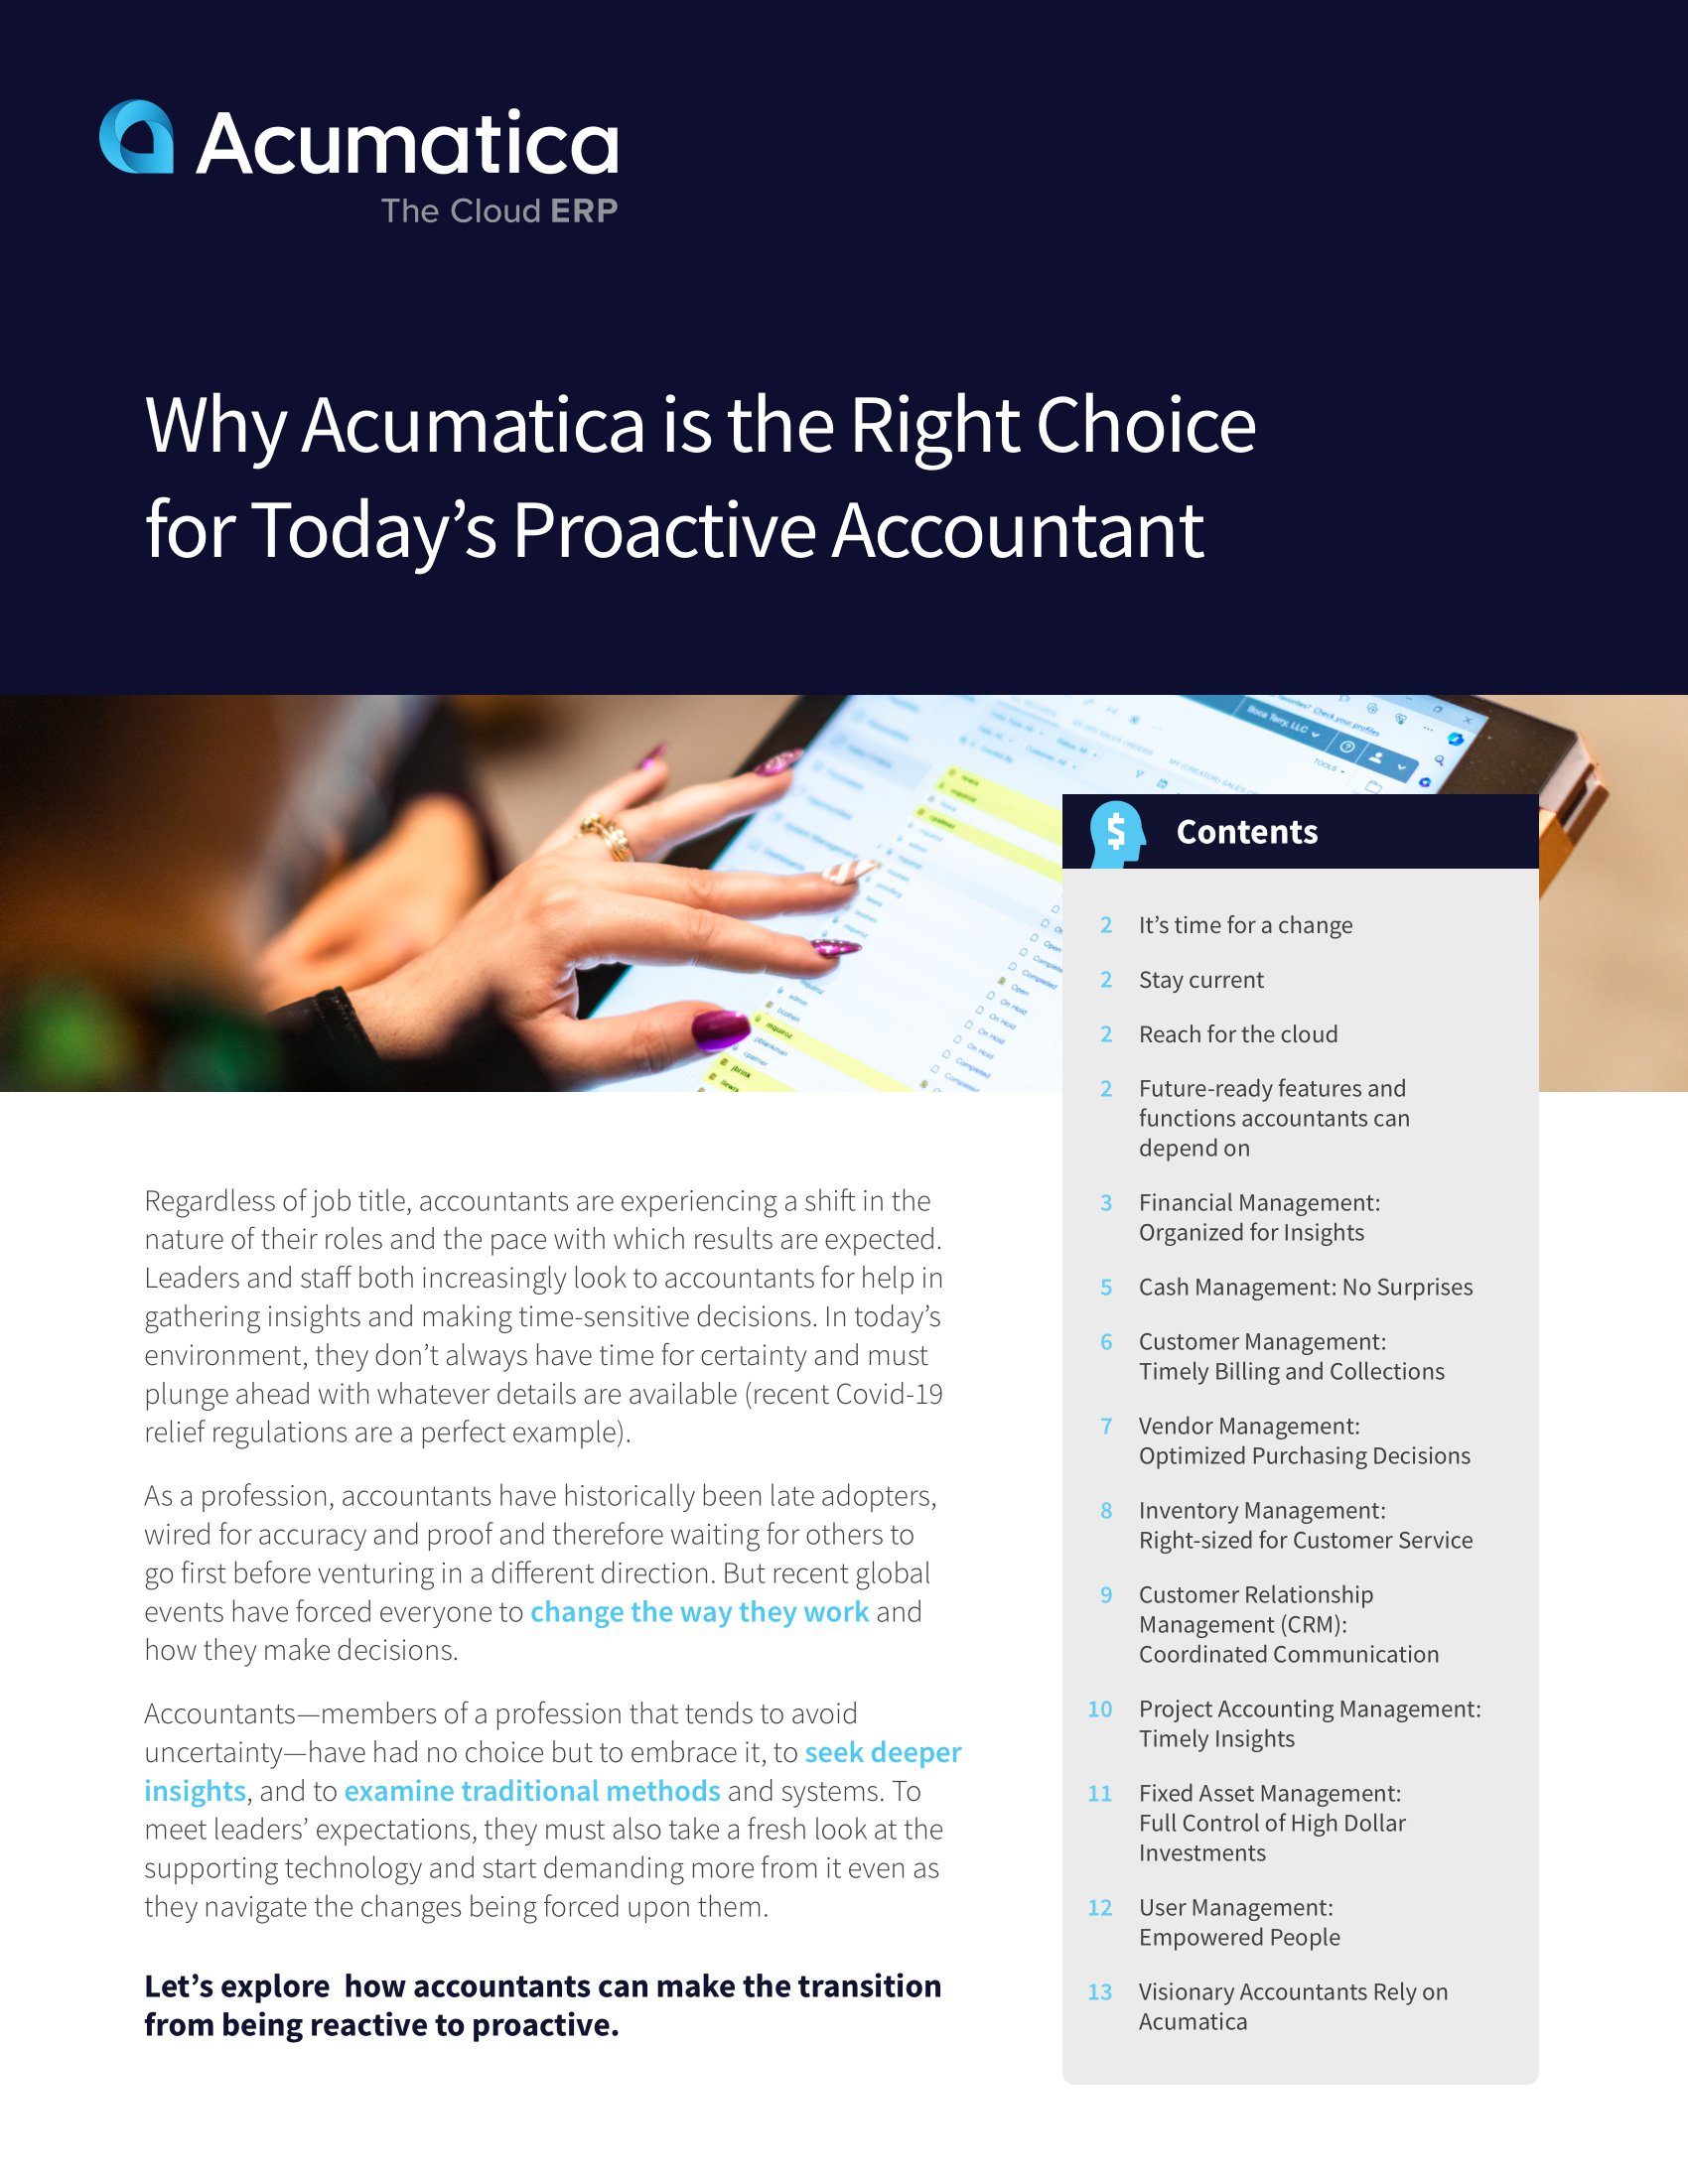 Por qué Acumatica es la elección correcta para el contable proactivo de hoy en día